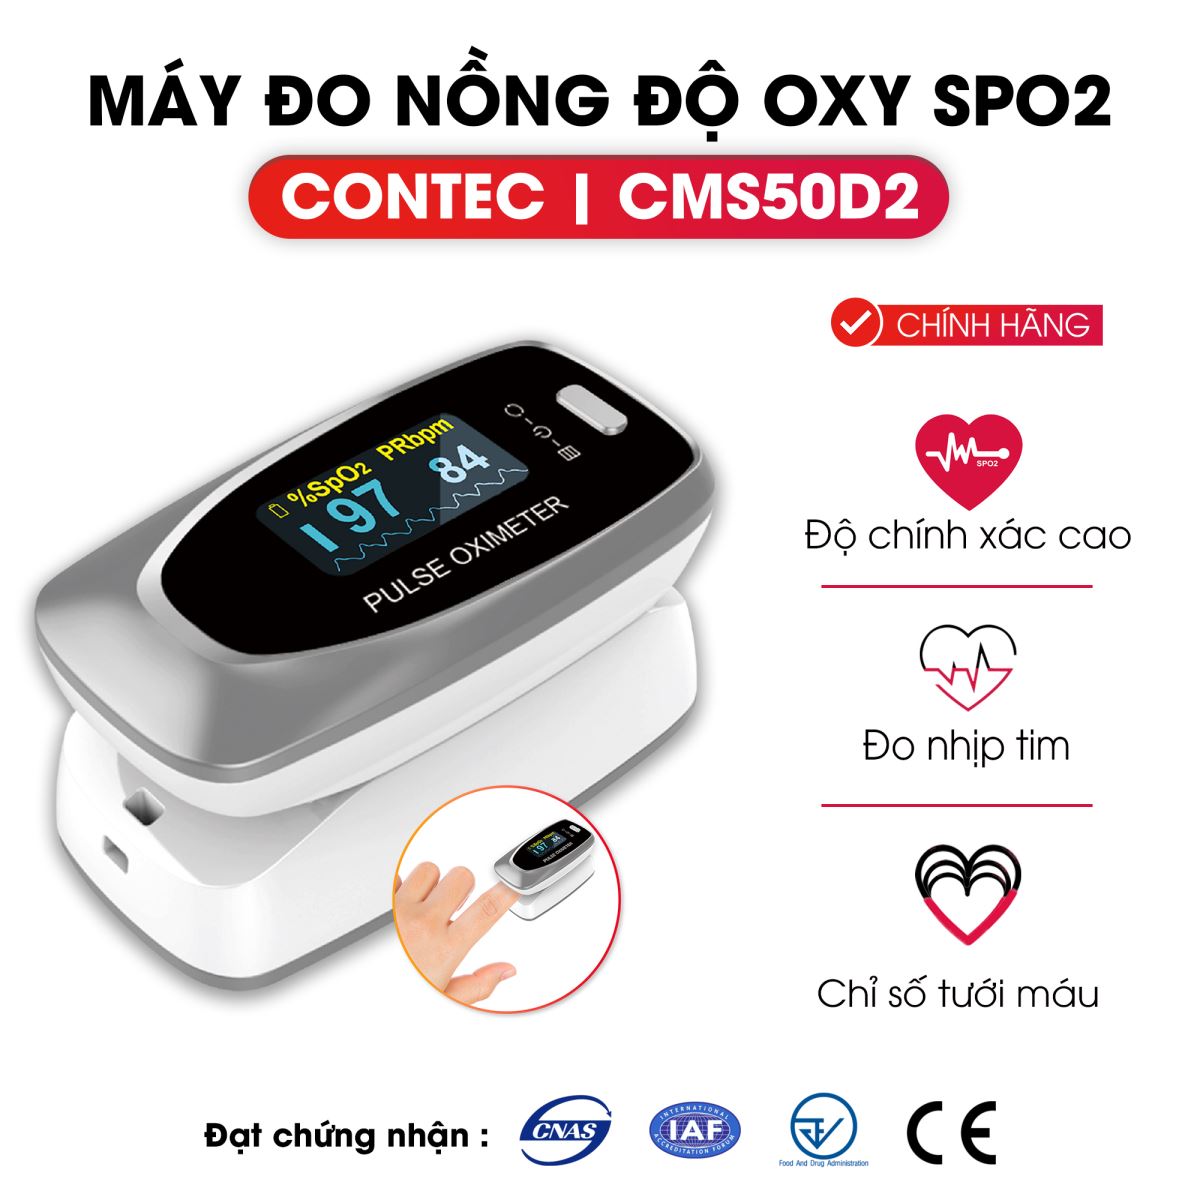 Máy đo nồng độ Oxy trong máu SPO2 Contec CMS50D2 có màn hình OLED lớn